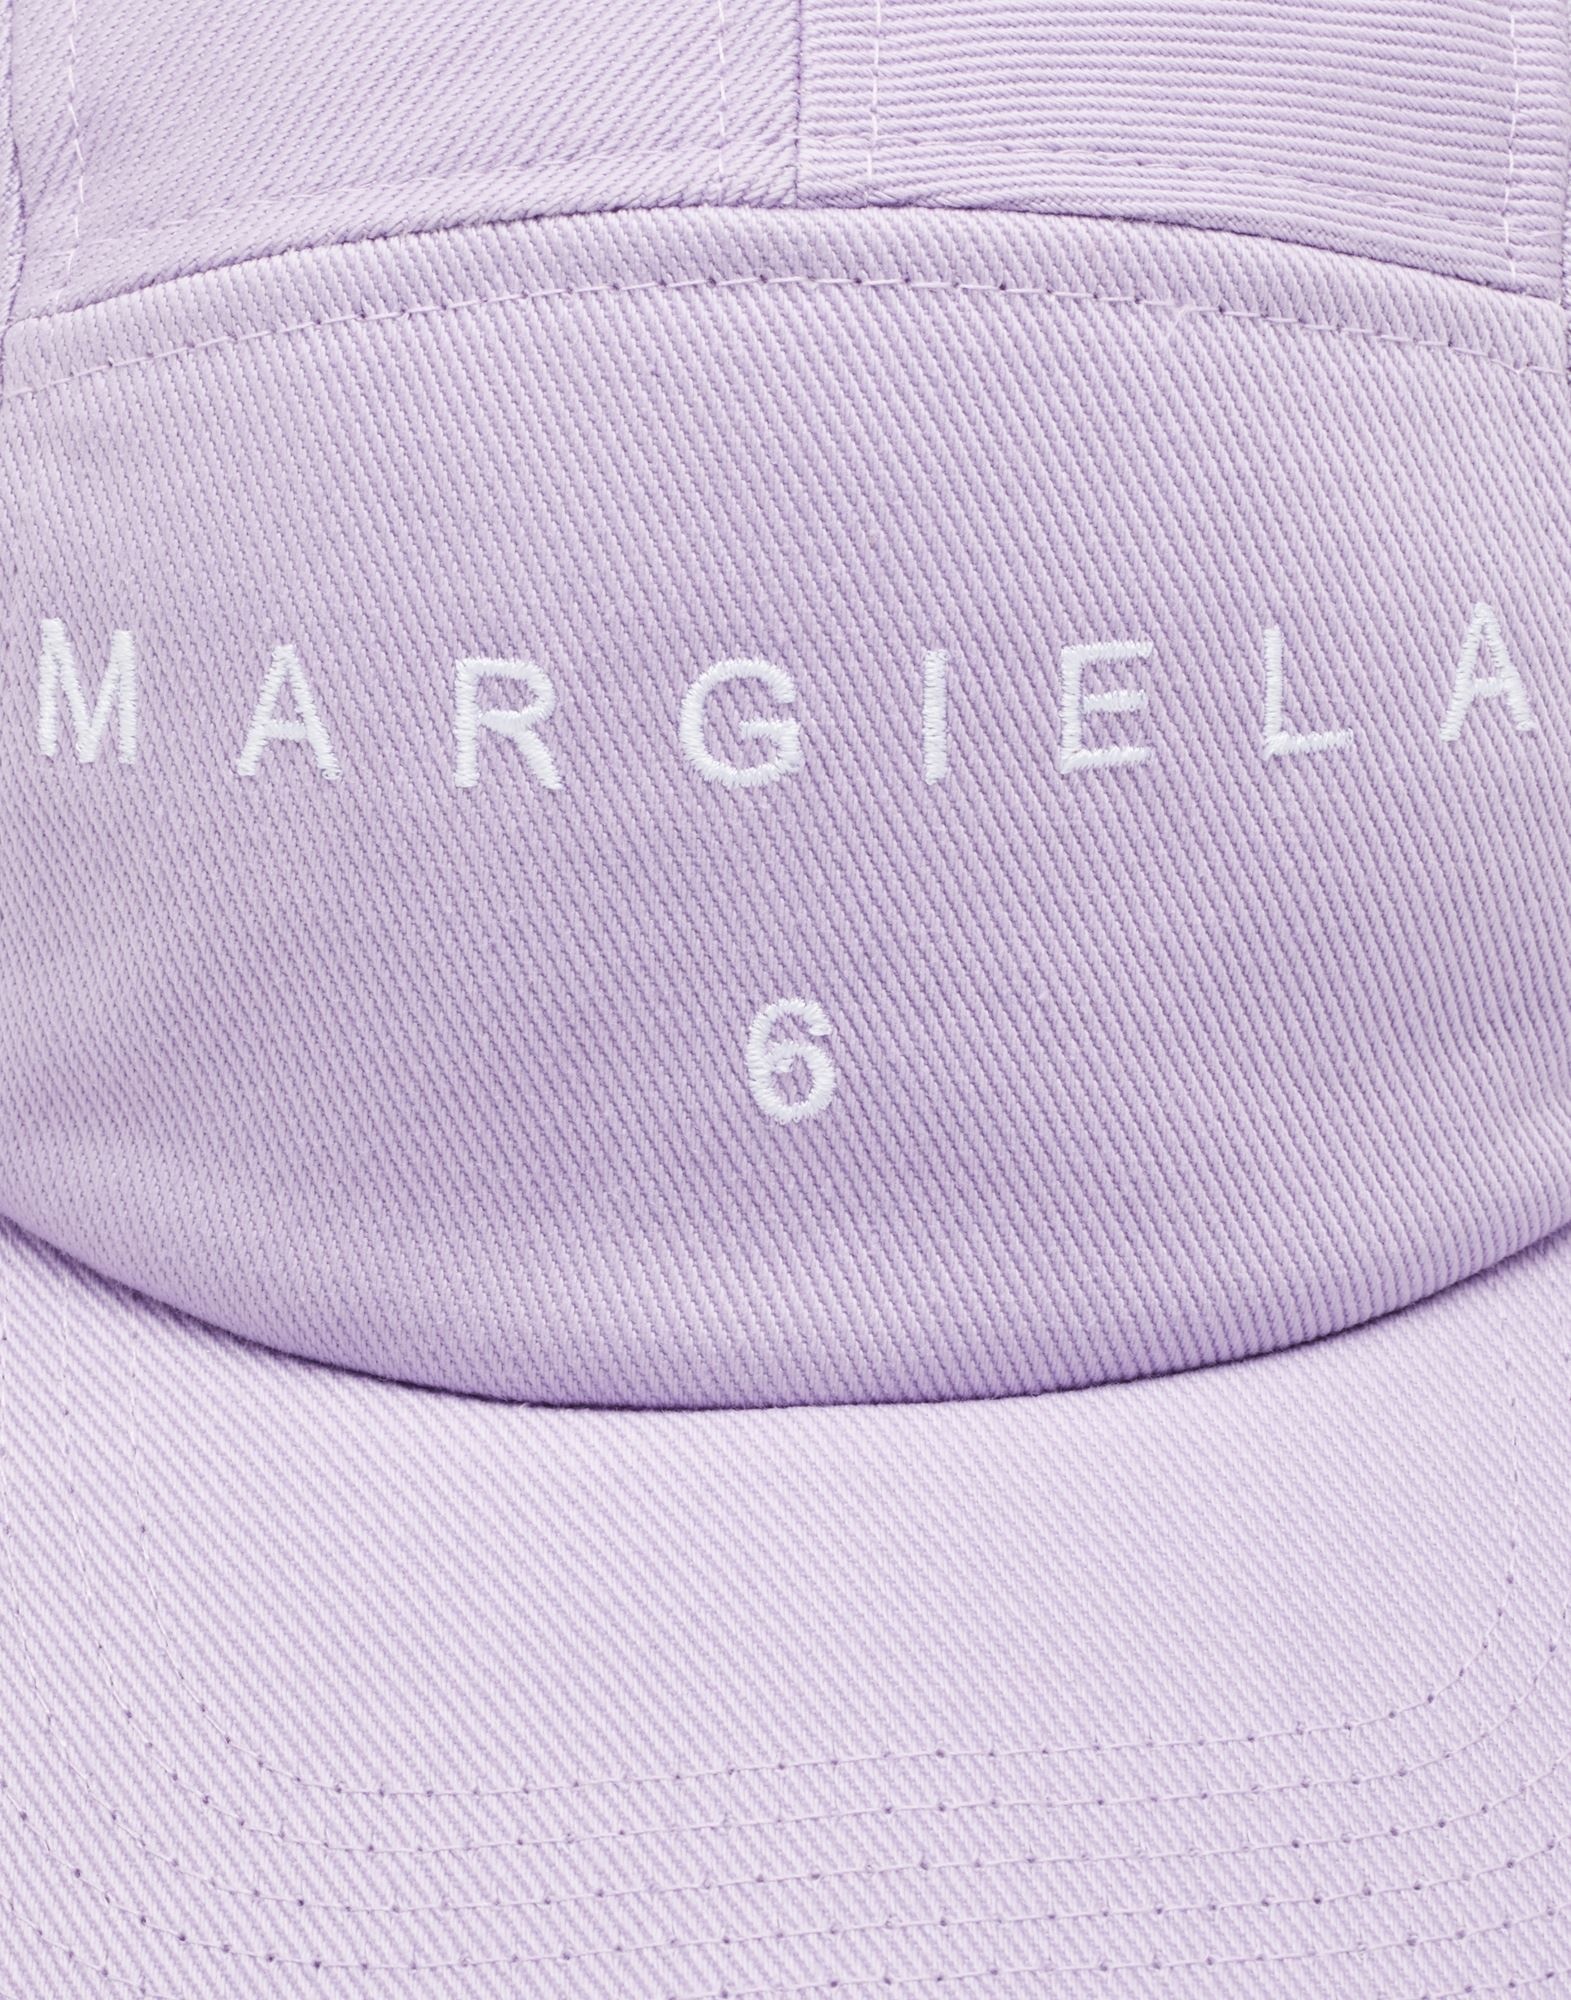 Margiela 6 logo cap - 3